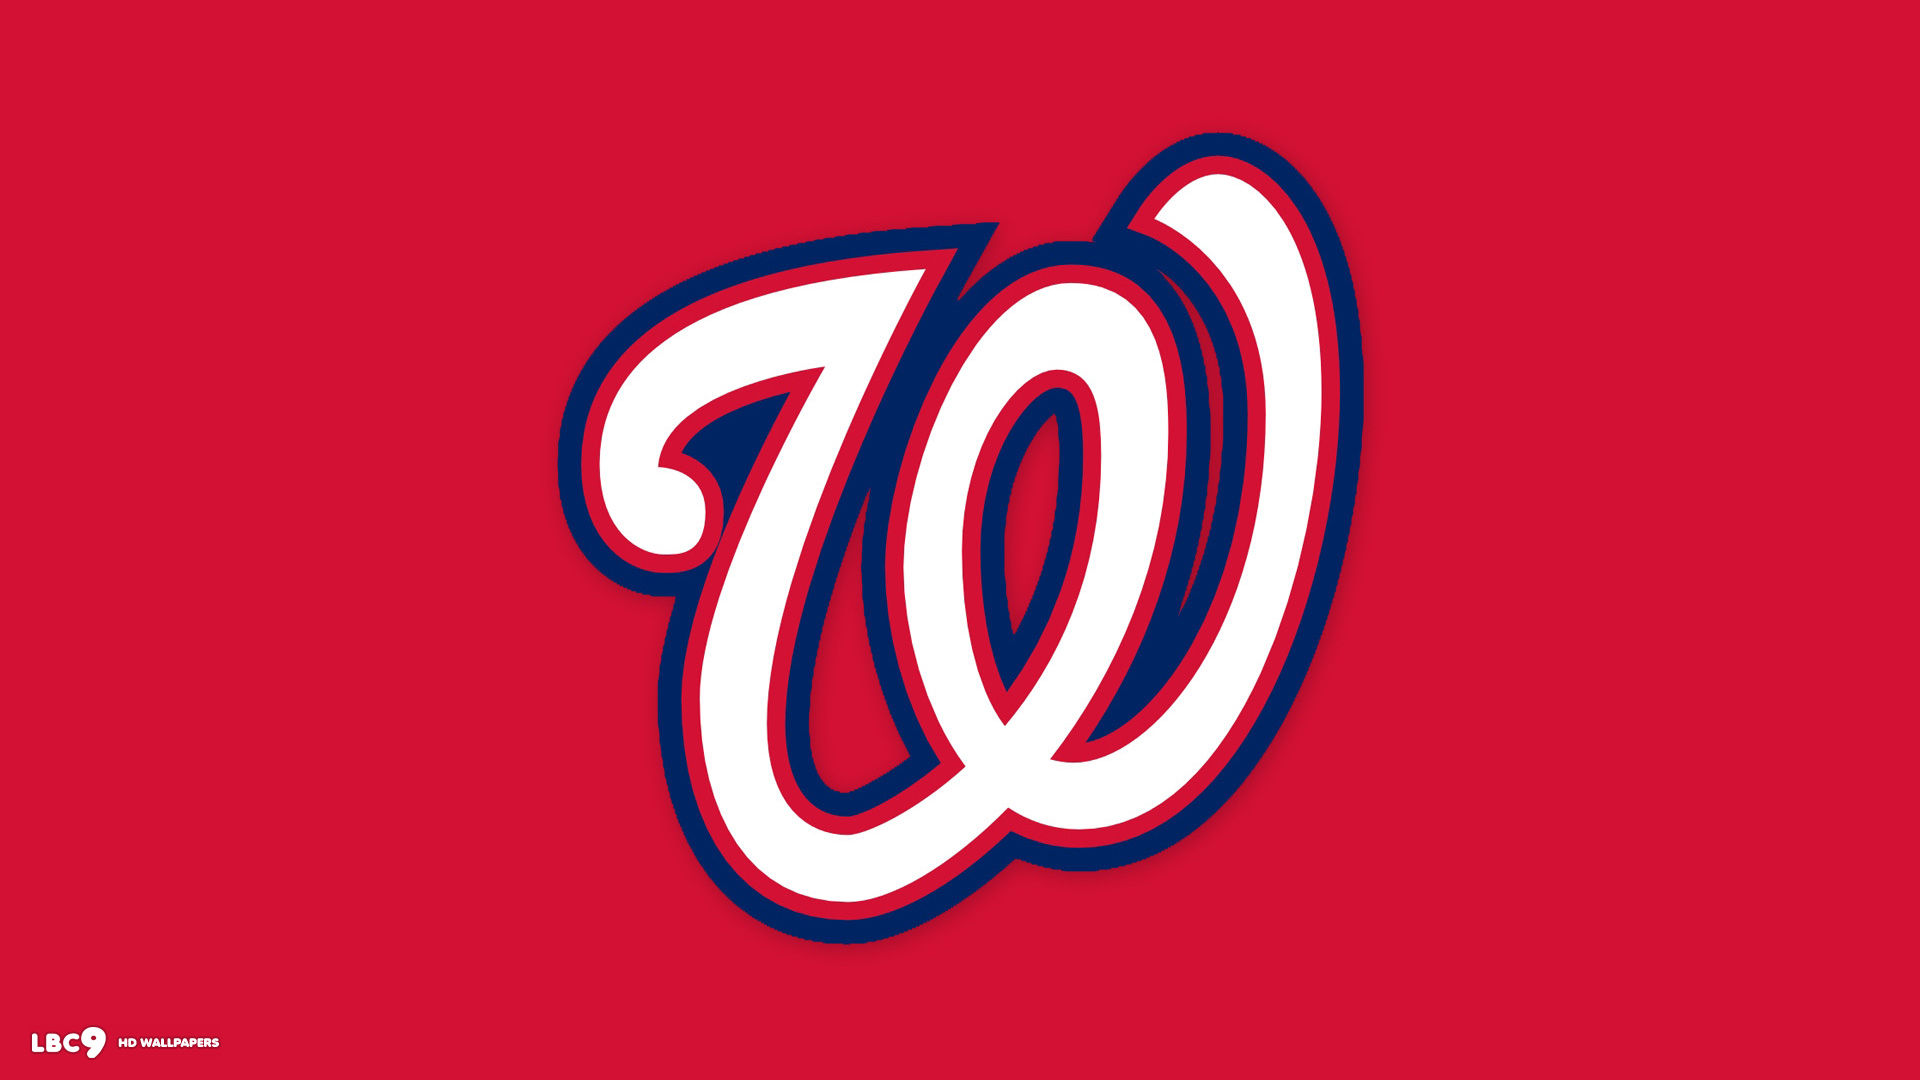 WASHINGTON NATIONALS mlb baseball 7 wallpaper 1920x1080 229448